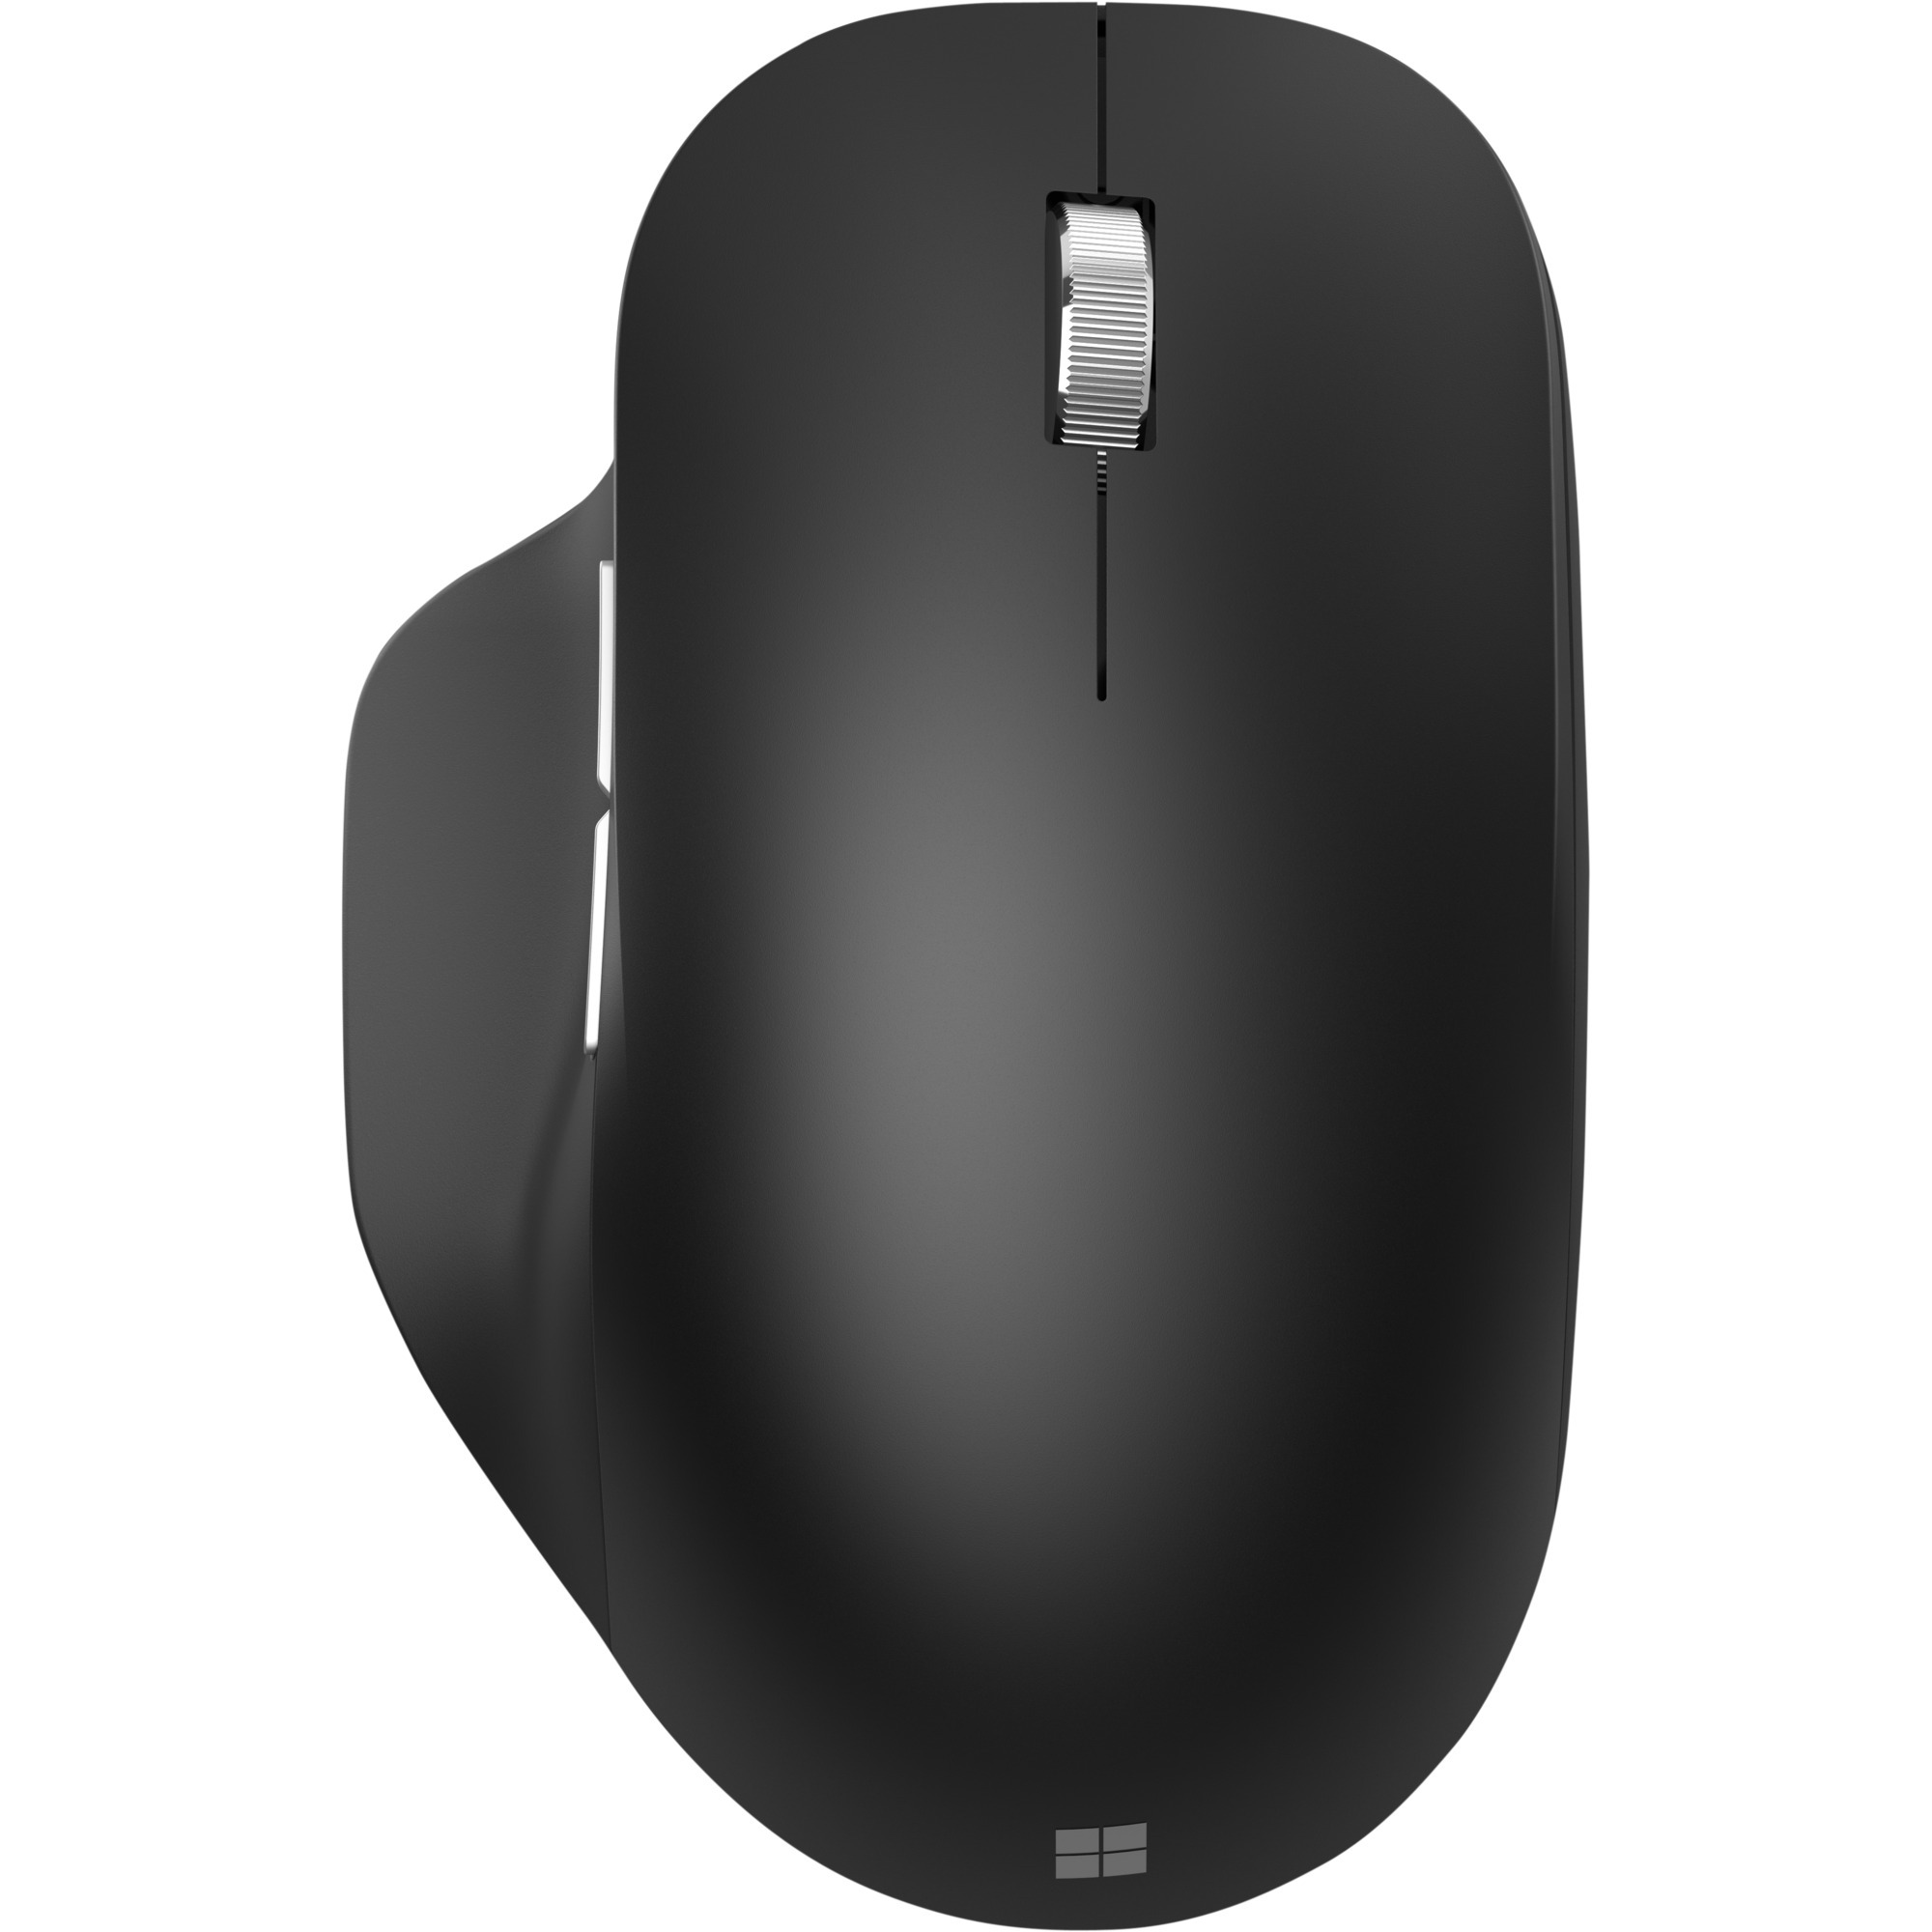 Image of Alternate - Bluetooth Ergonomic Mouse, Maus online einkaufen bei Alternate